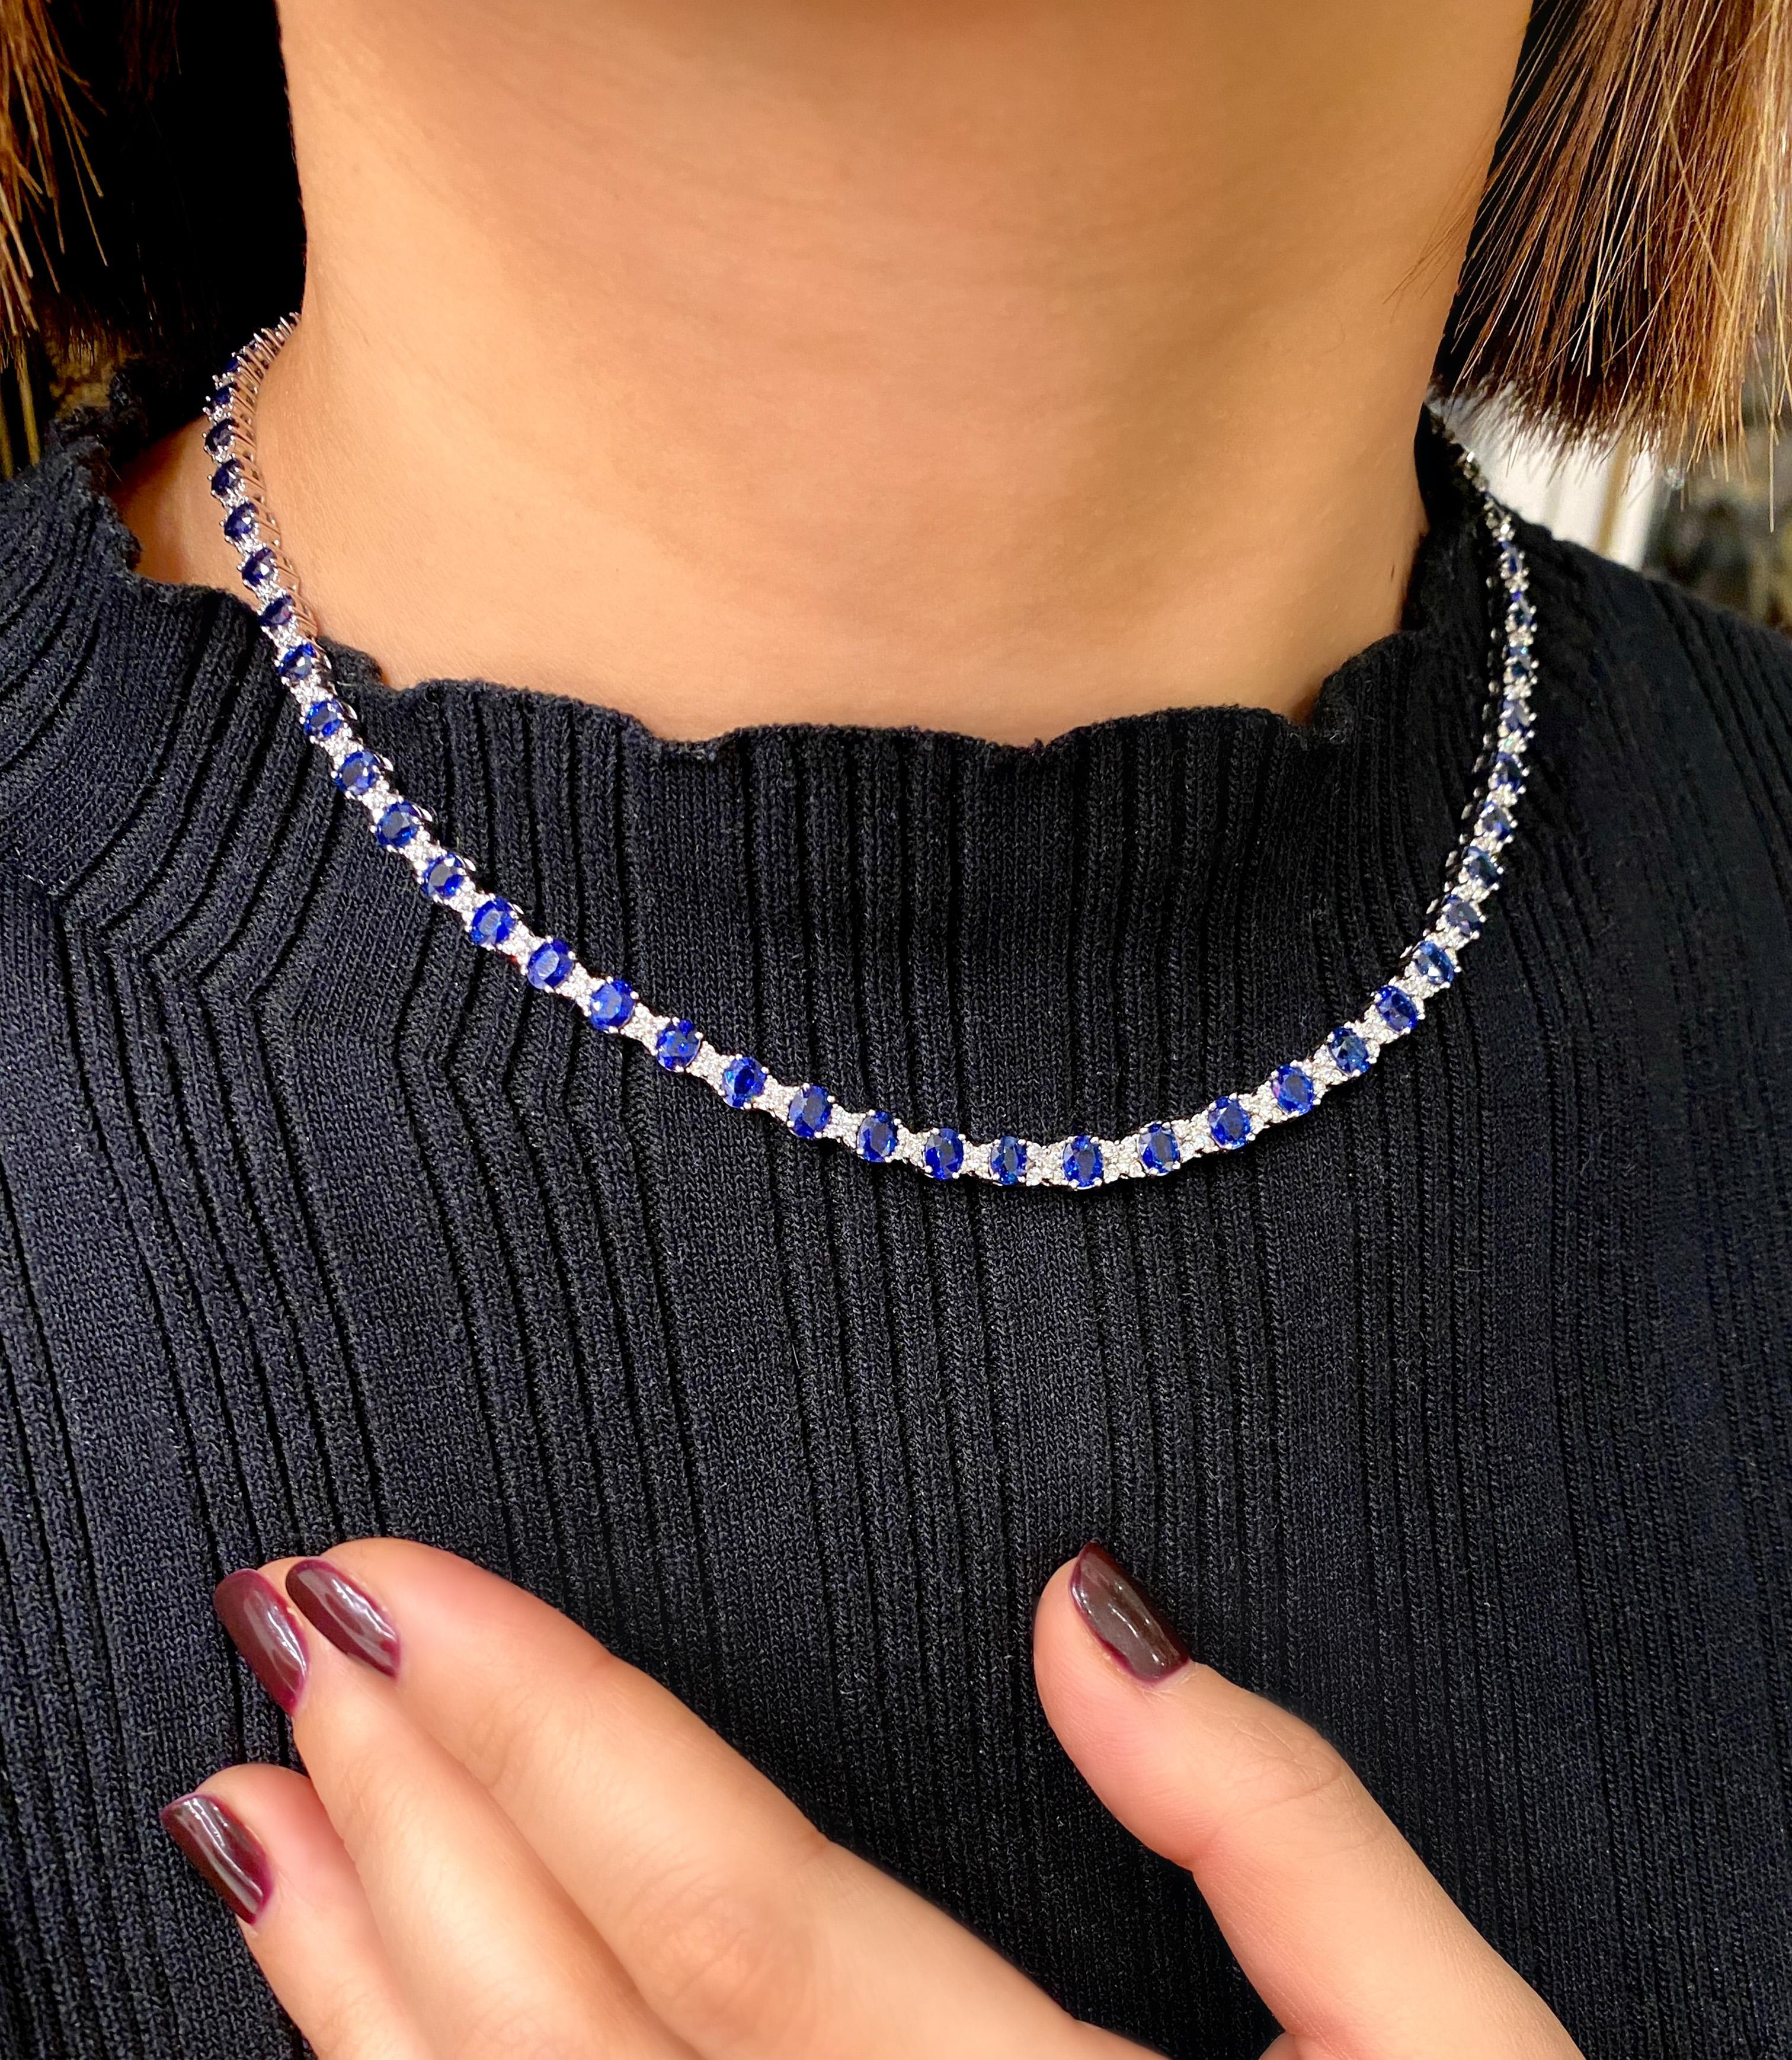 Dieses wunderschöne Collier aus Saphiren und Diamanten ist eine Ode an die Liebe. Er ist mit blauen Saphiren inmitten von Diamanten besetzt, die das X-Design bilden. Dieses wunderschöne Collier aus 18 Karat Weißgold besteht aus 65 blauen Saphiren